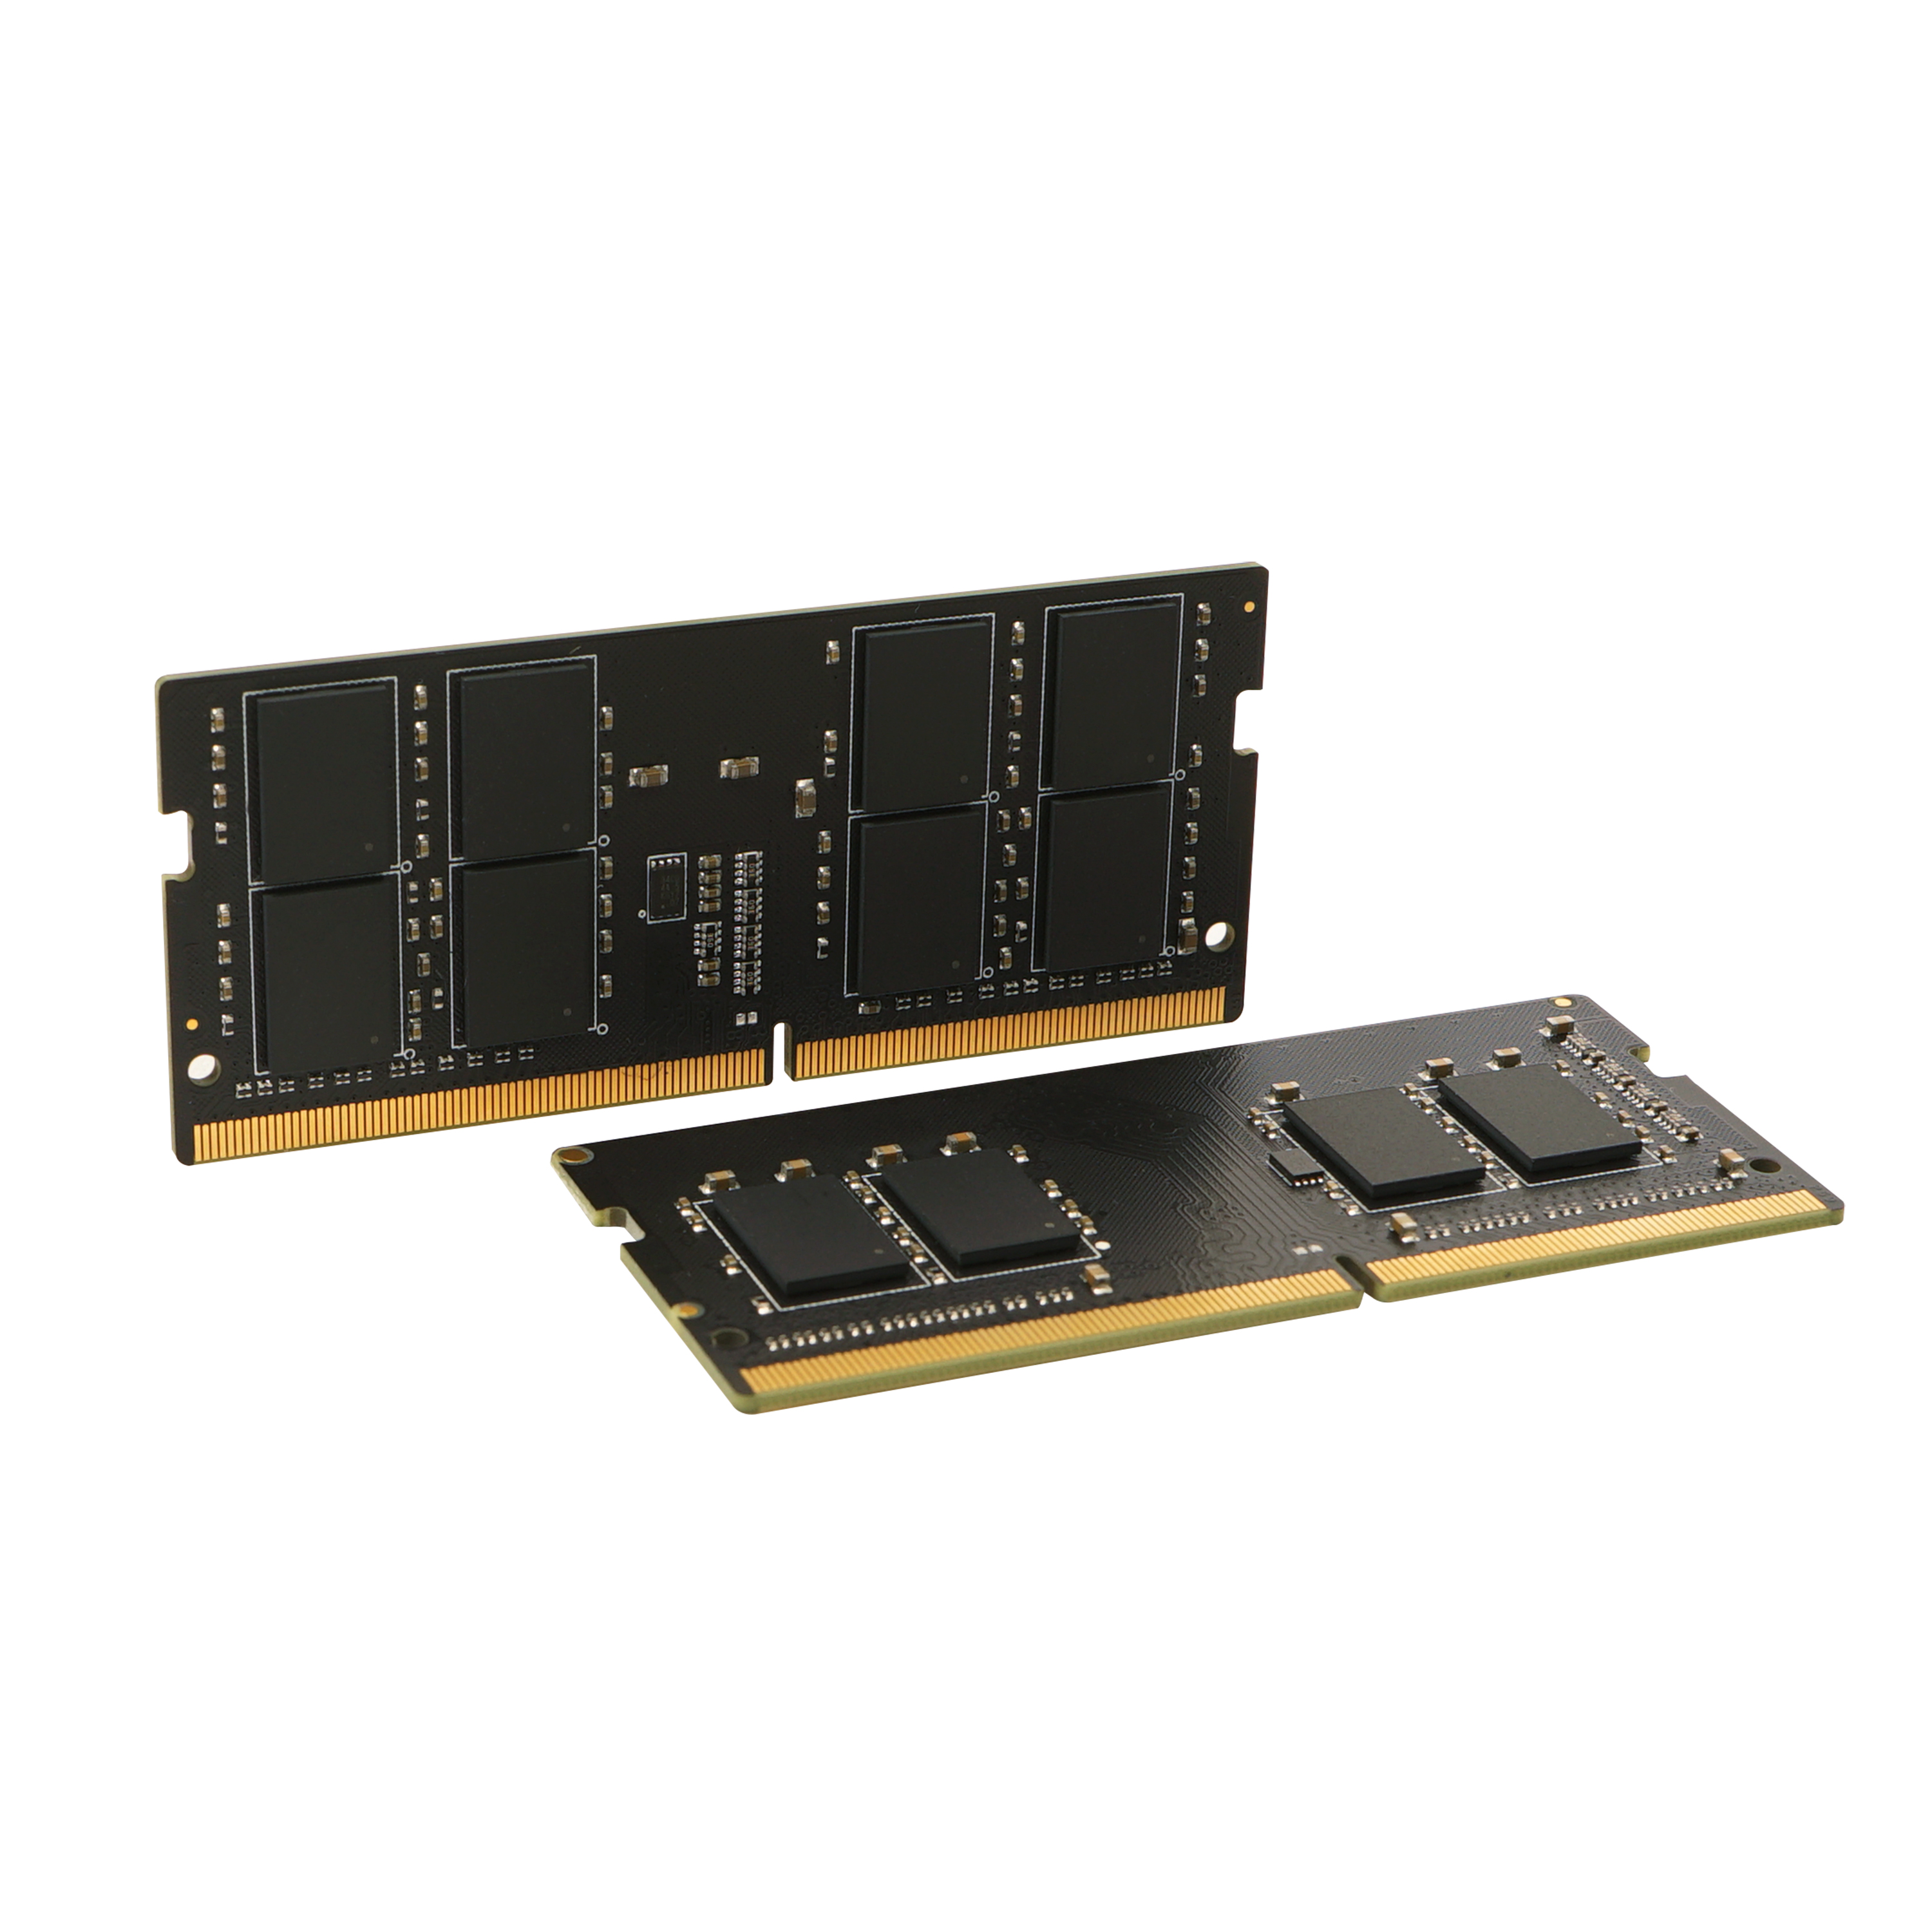 RAM Laptop Silicon Power 8GB DDR4 3200MHz CL22 SODIMM - Hàng chính hãng